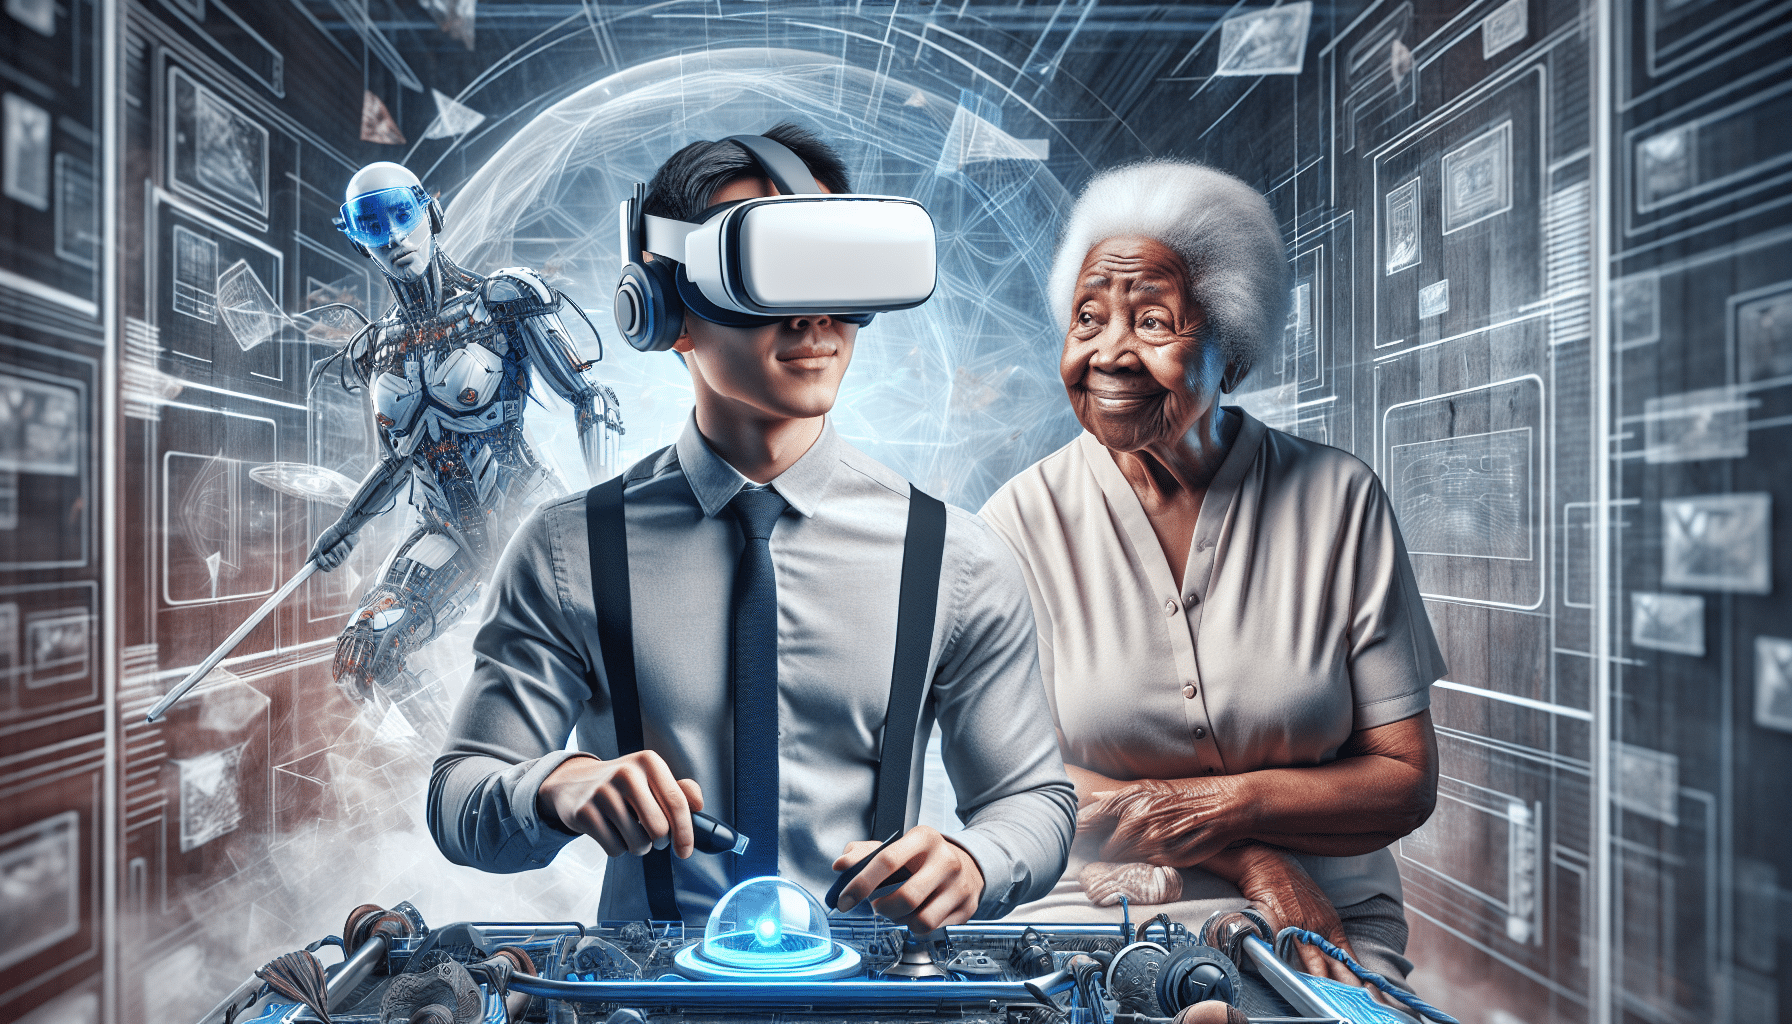 découvrez la réalité virtuelle en plein essor : révolution technologique ou simple engouement passager ? apprenez-en plus sur ce phénomène en pleine expansion.